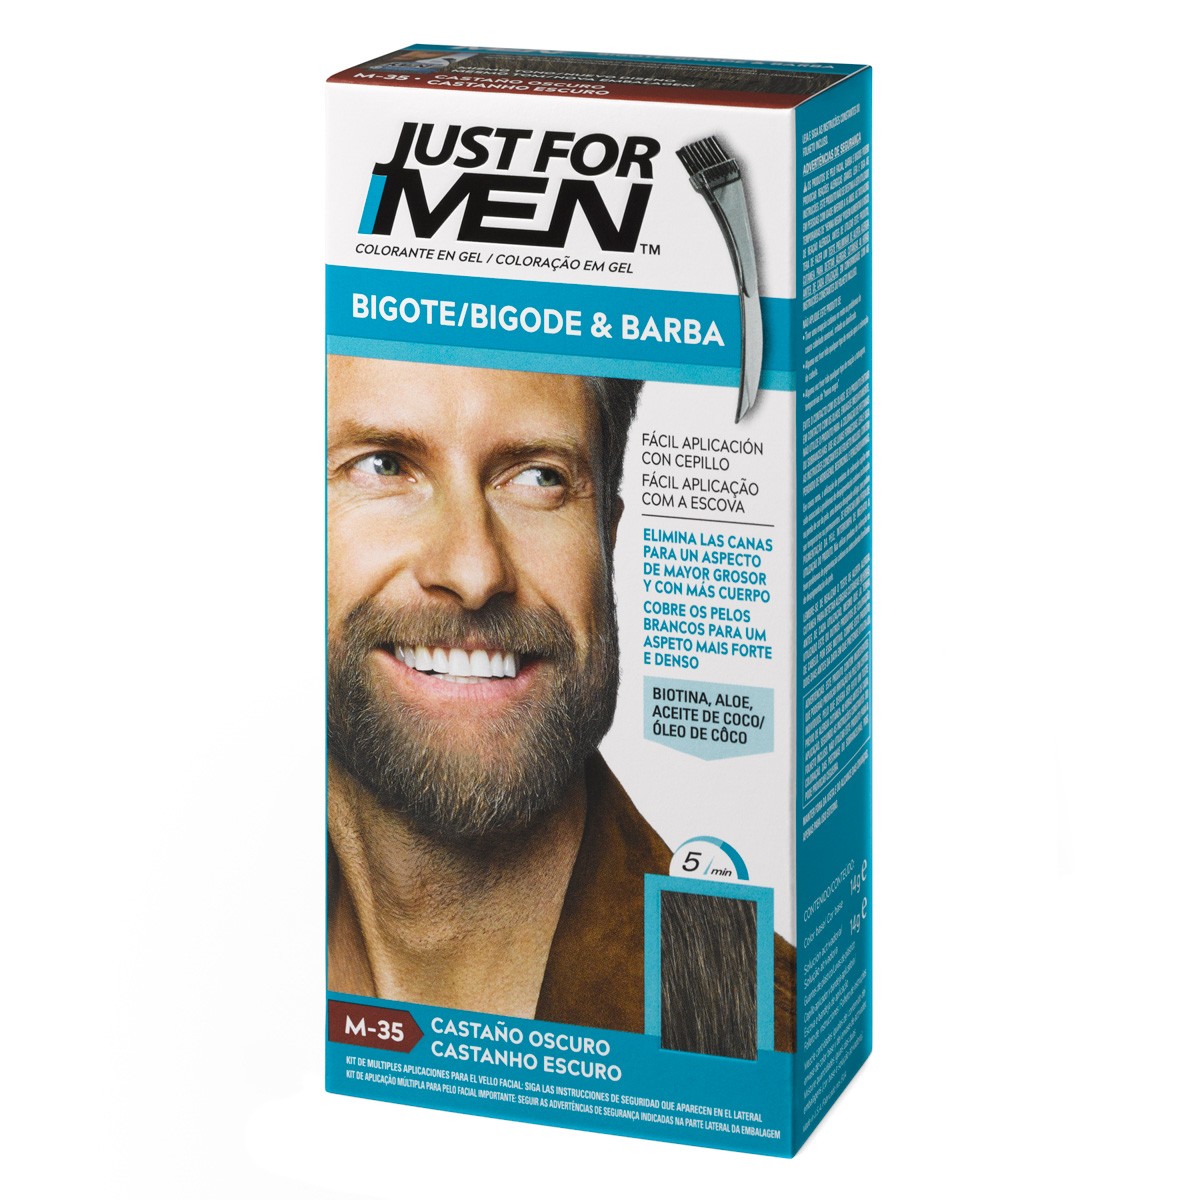 Just for men barba bigote cast oscuro